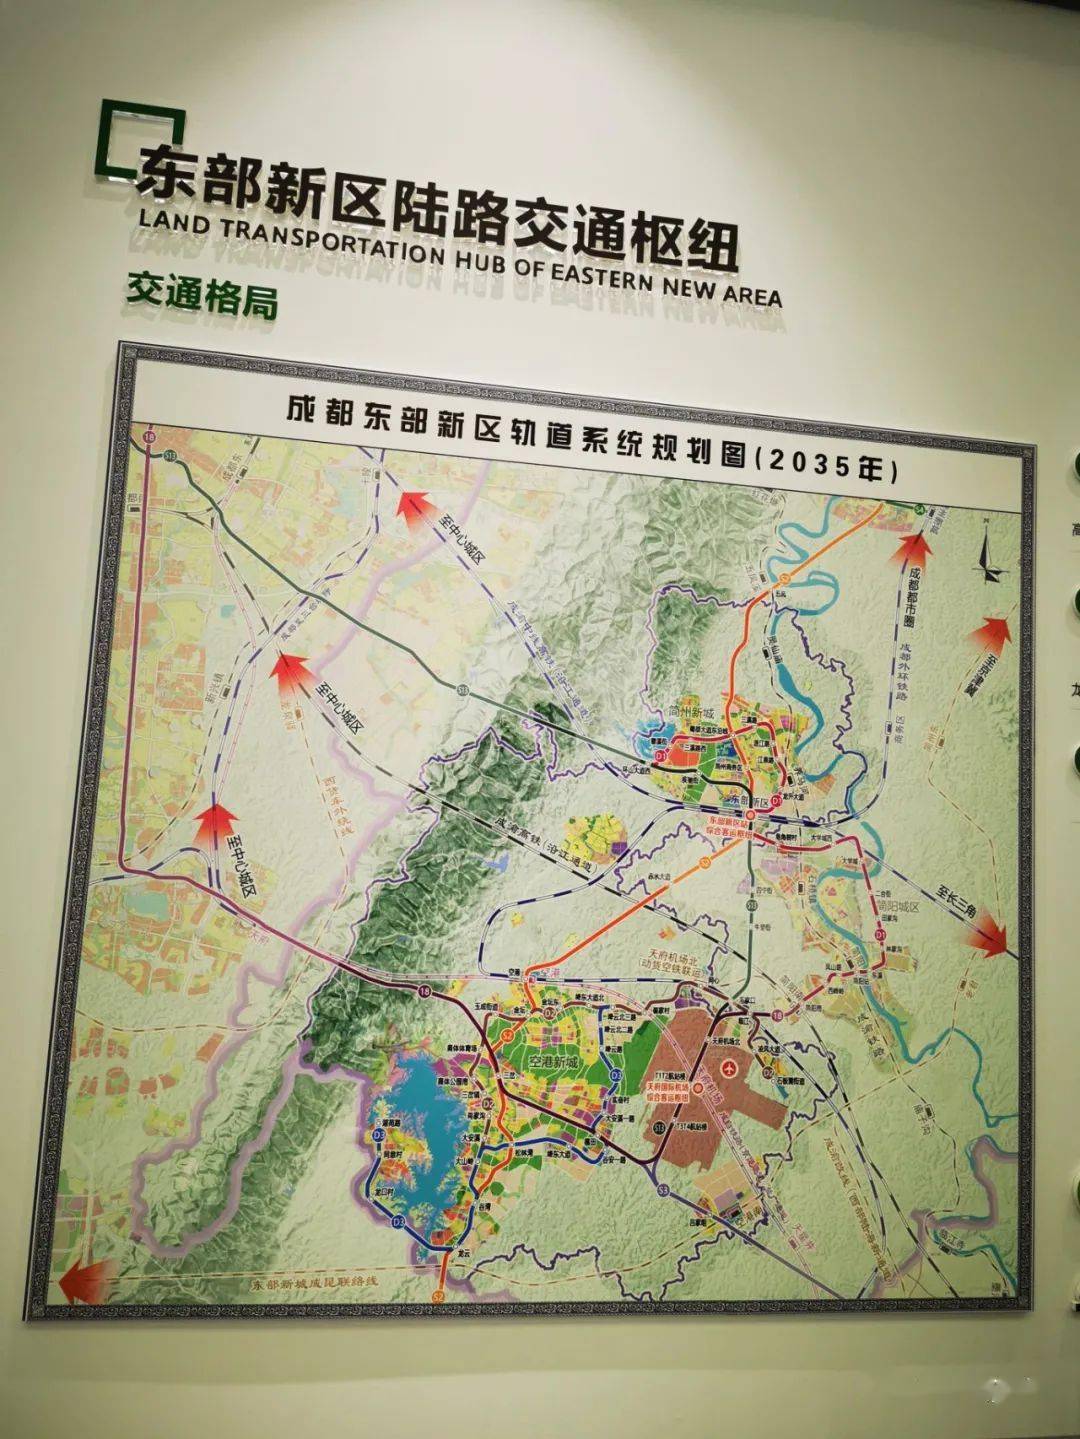 18,成安县位于河北省南部,境域4815平方公里,辖四镇五乡,234个行政村